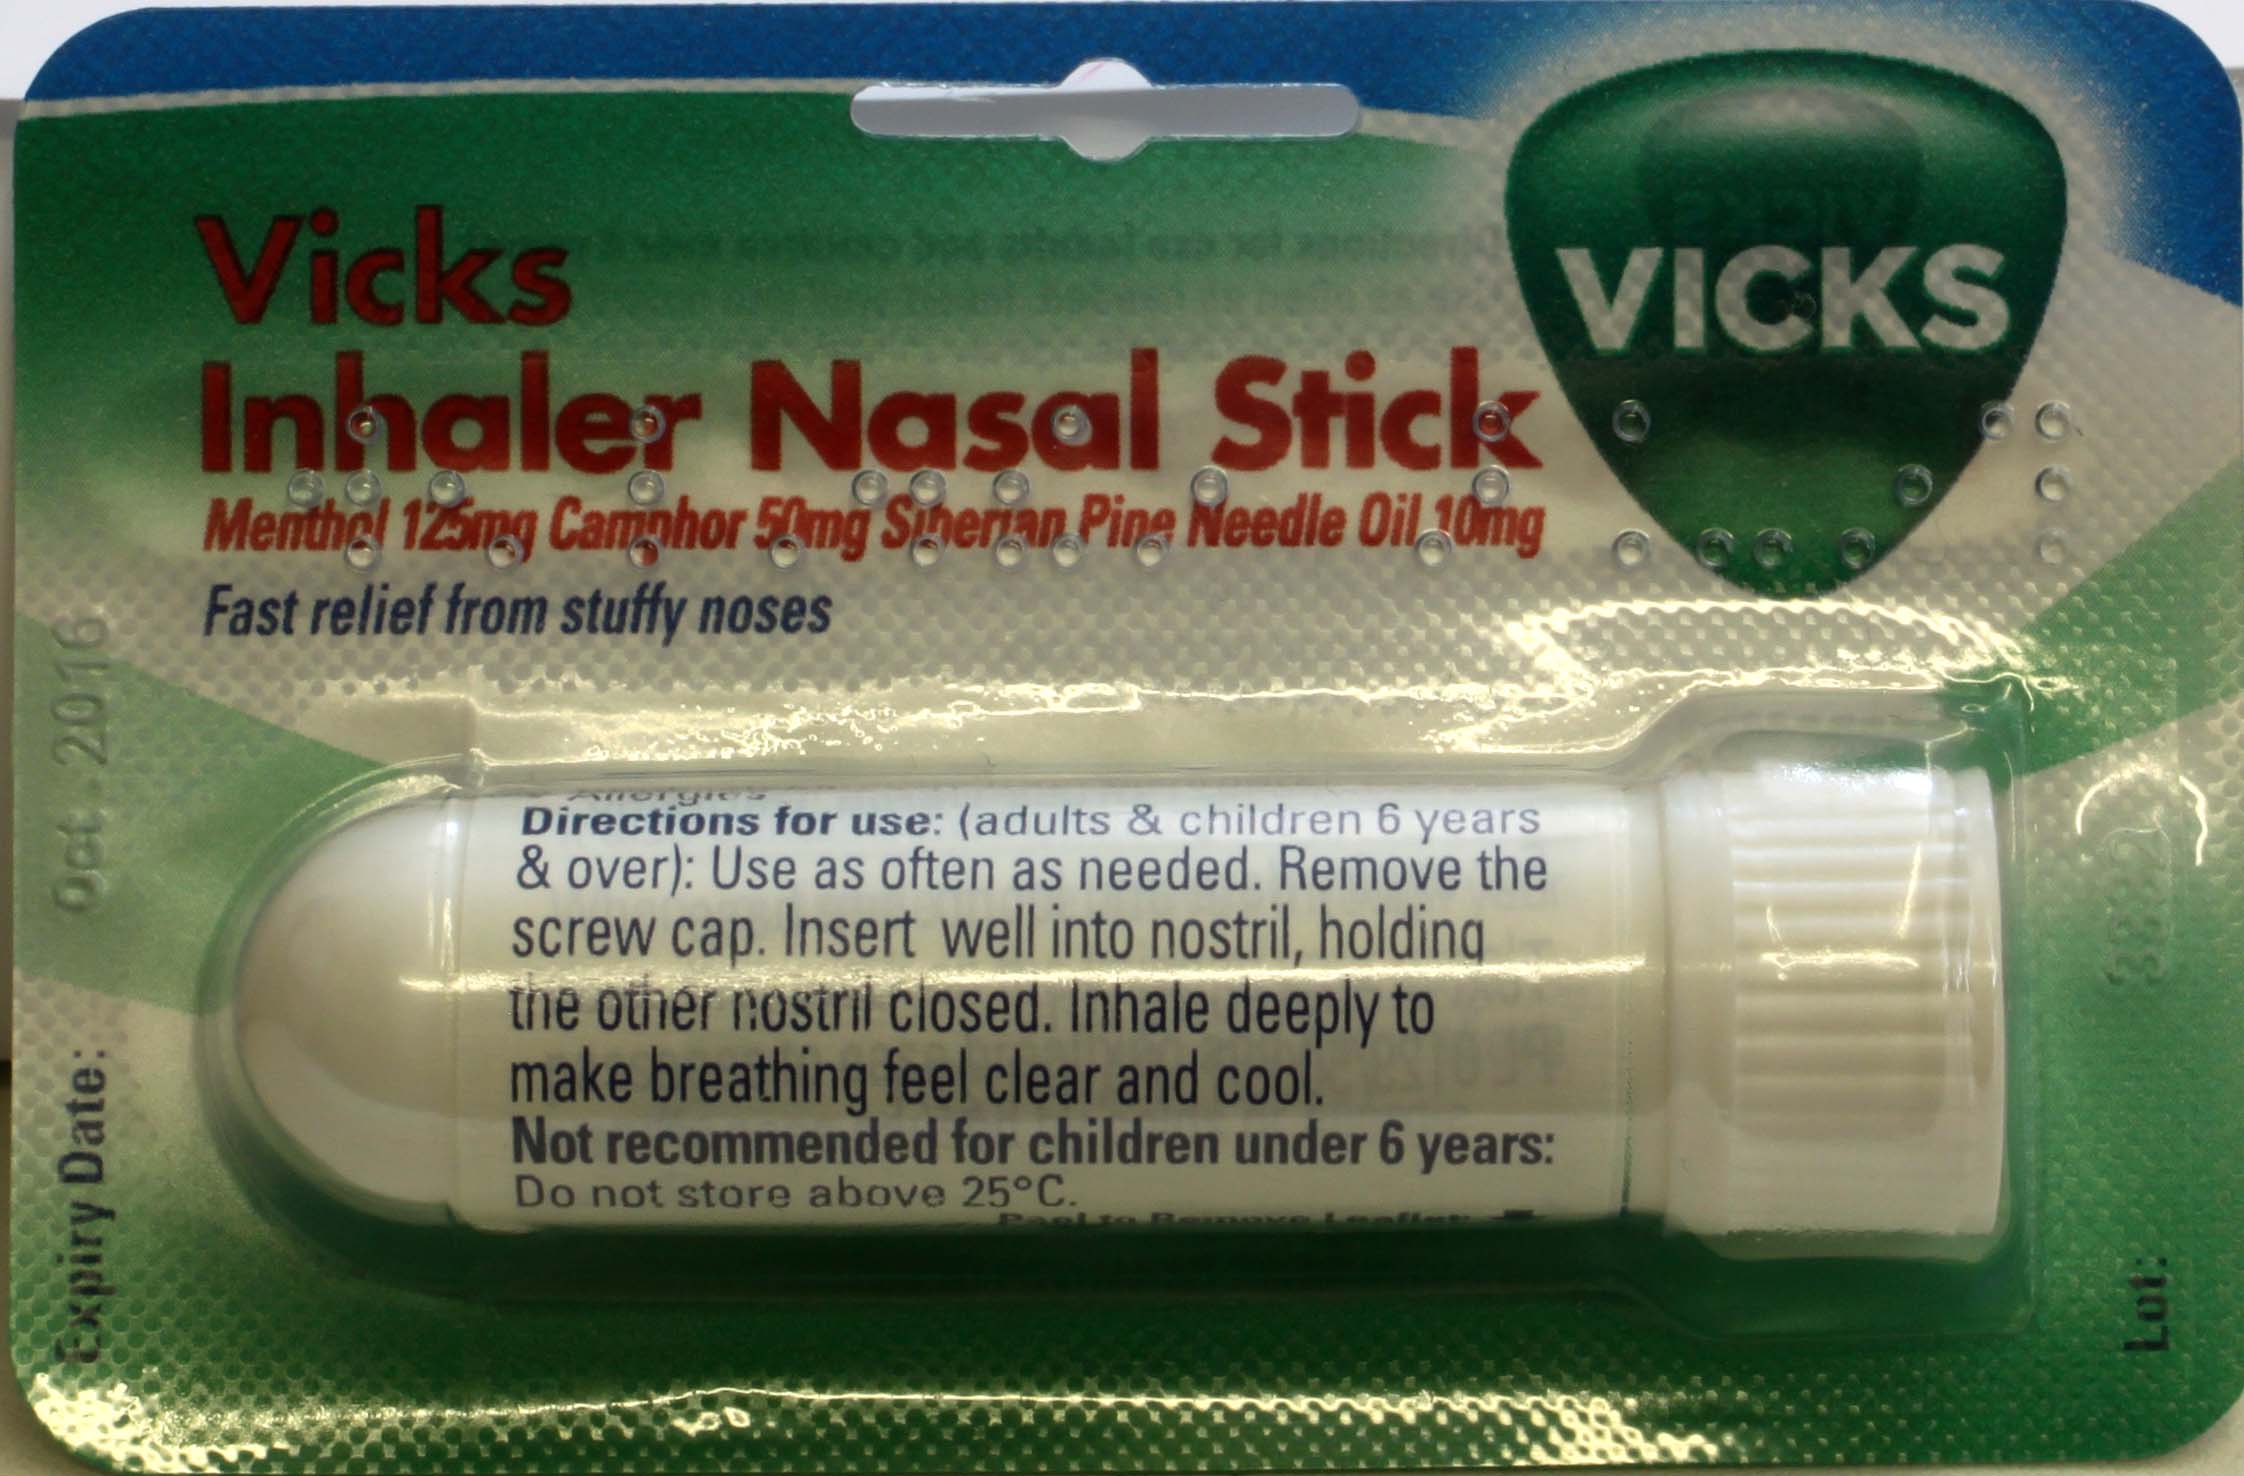 Vicks Inhaler  Online Pharmacy UK